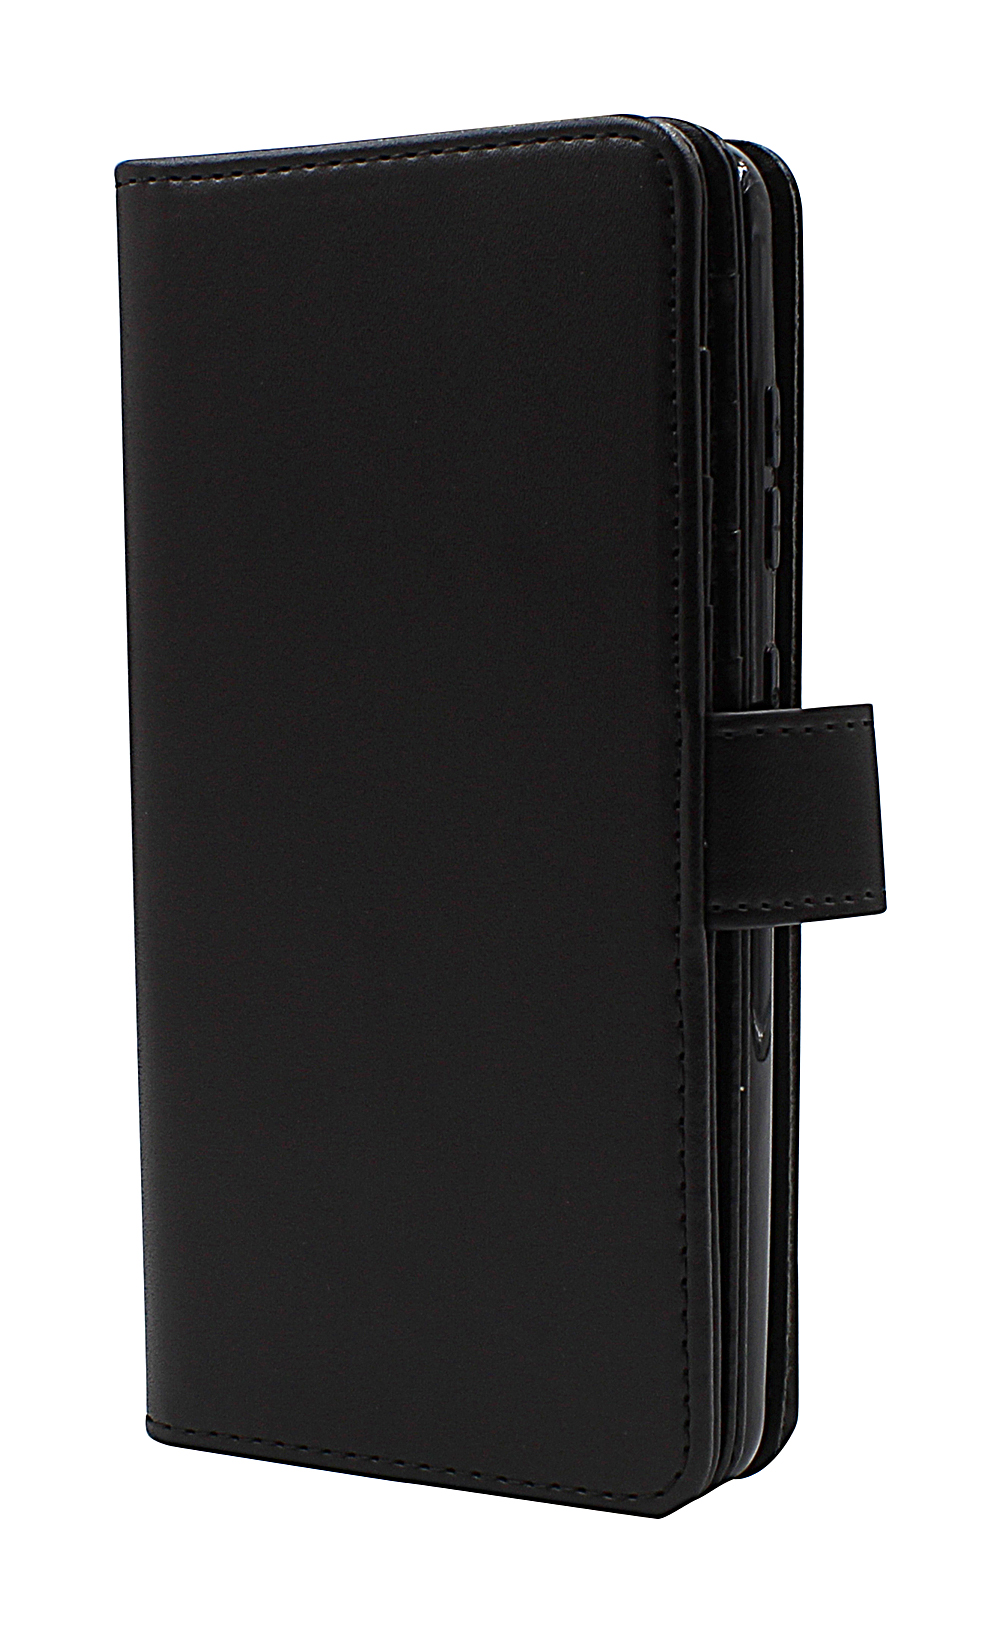 Skimblocker XL Wallet Samsung Galaxy S20 (G980F/G981B/DS)